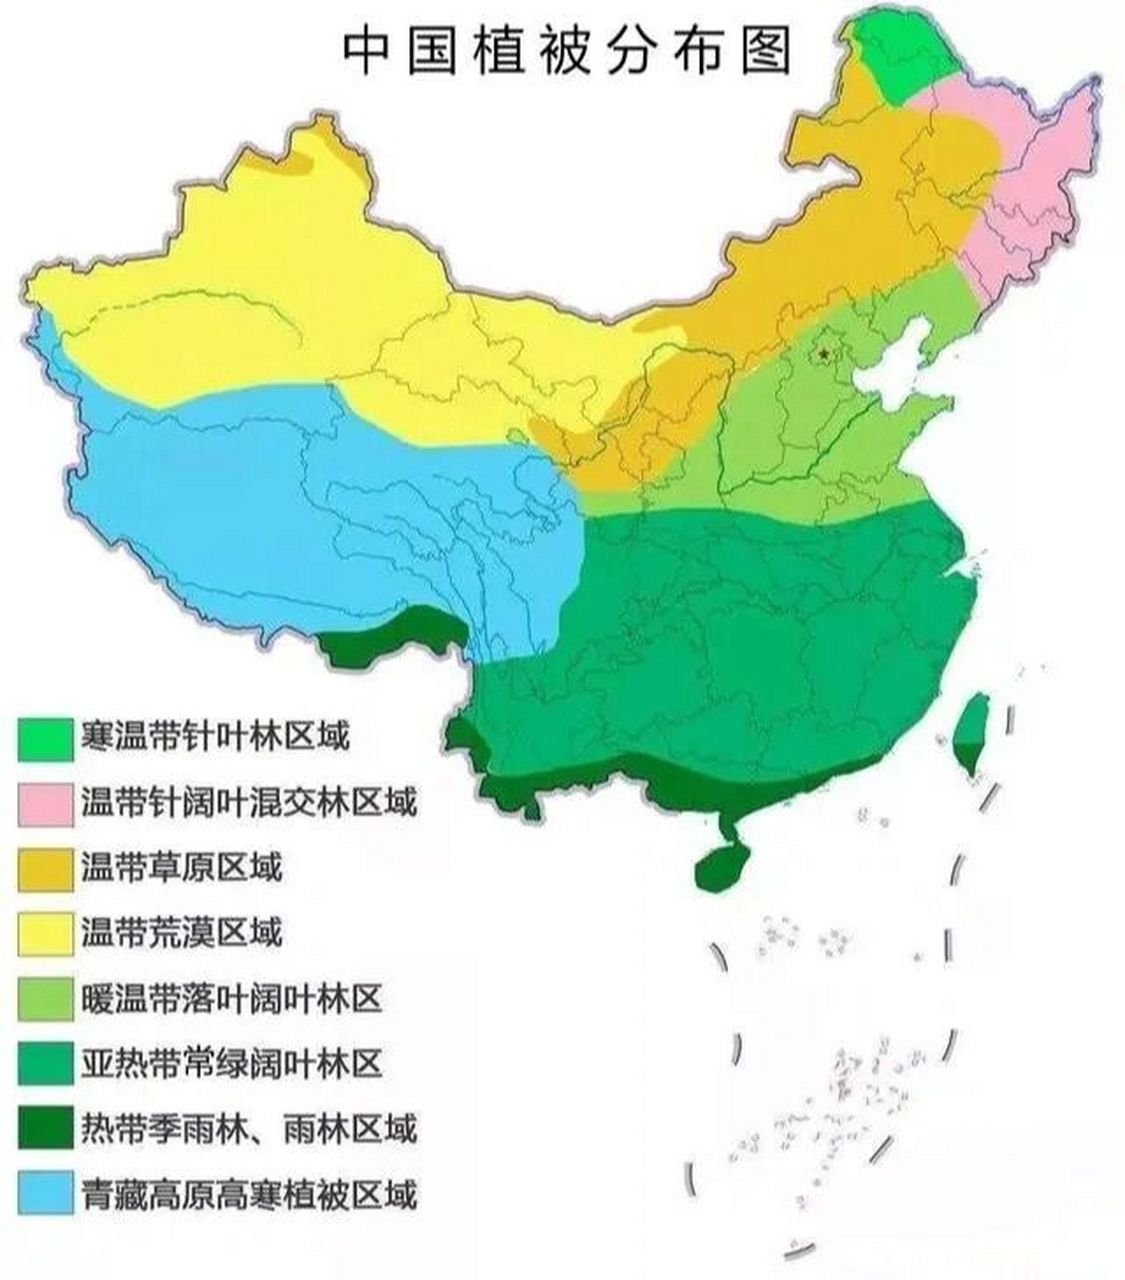 中国植被分布 我国疆域辽阔,植被类型十分丰富